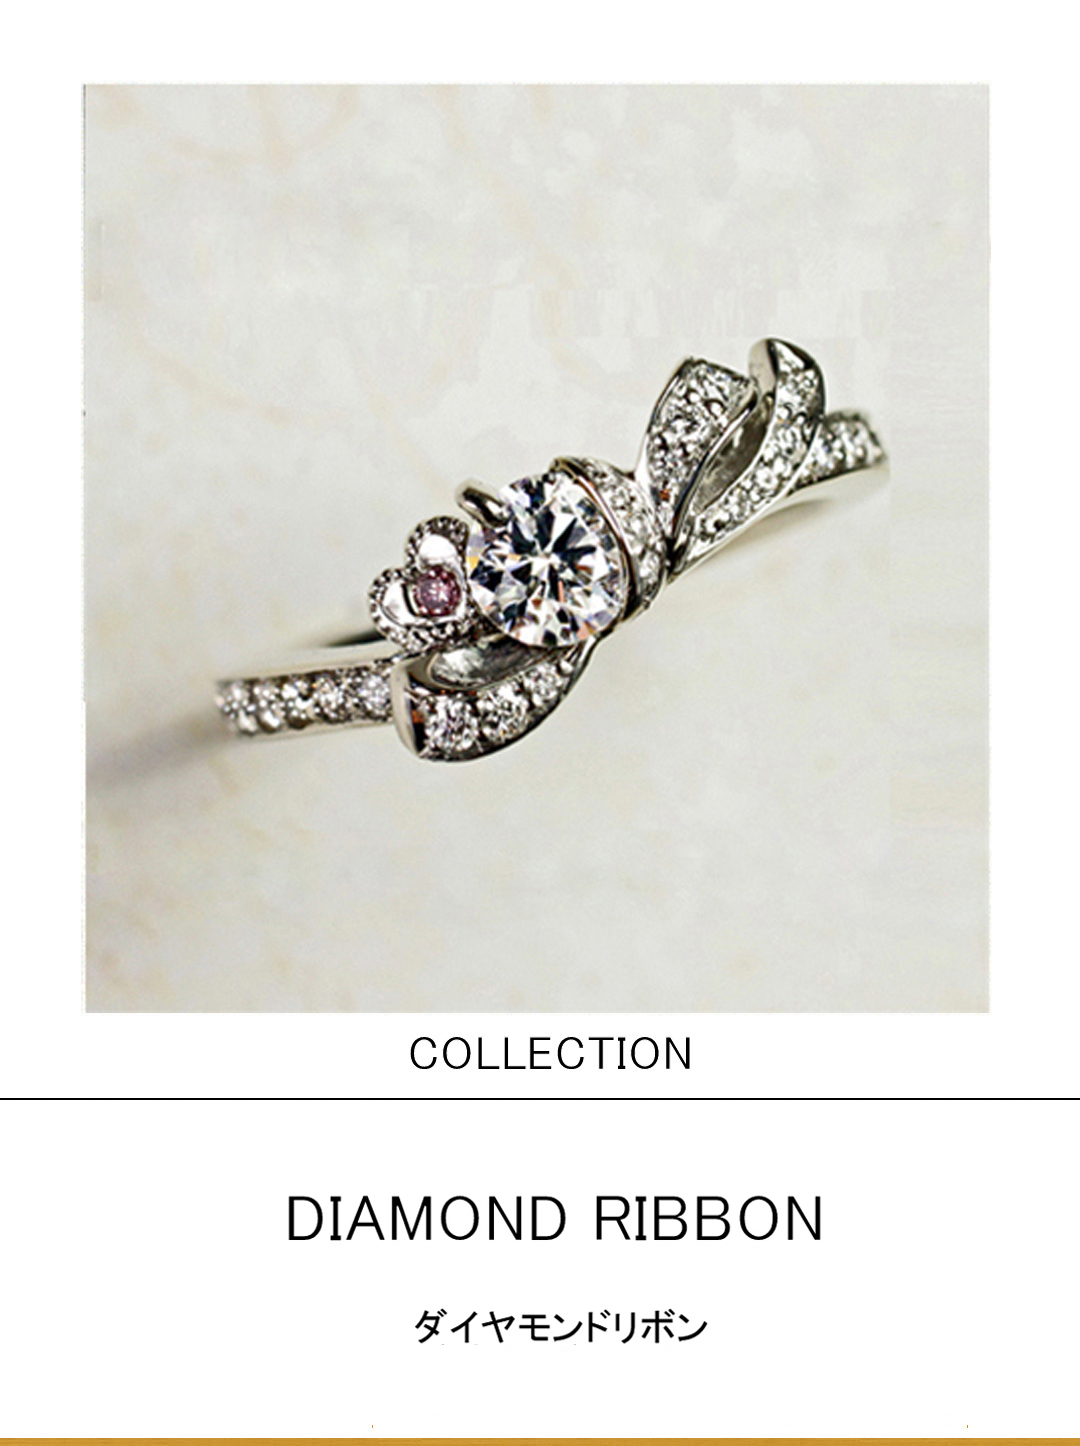 ダイヤモンドをリボンで結んだデザインの婚約指輪コレクション | 千葉・柏で結婚指輪をオーダーメイドするならヨーアンドマーレ